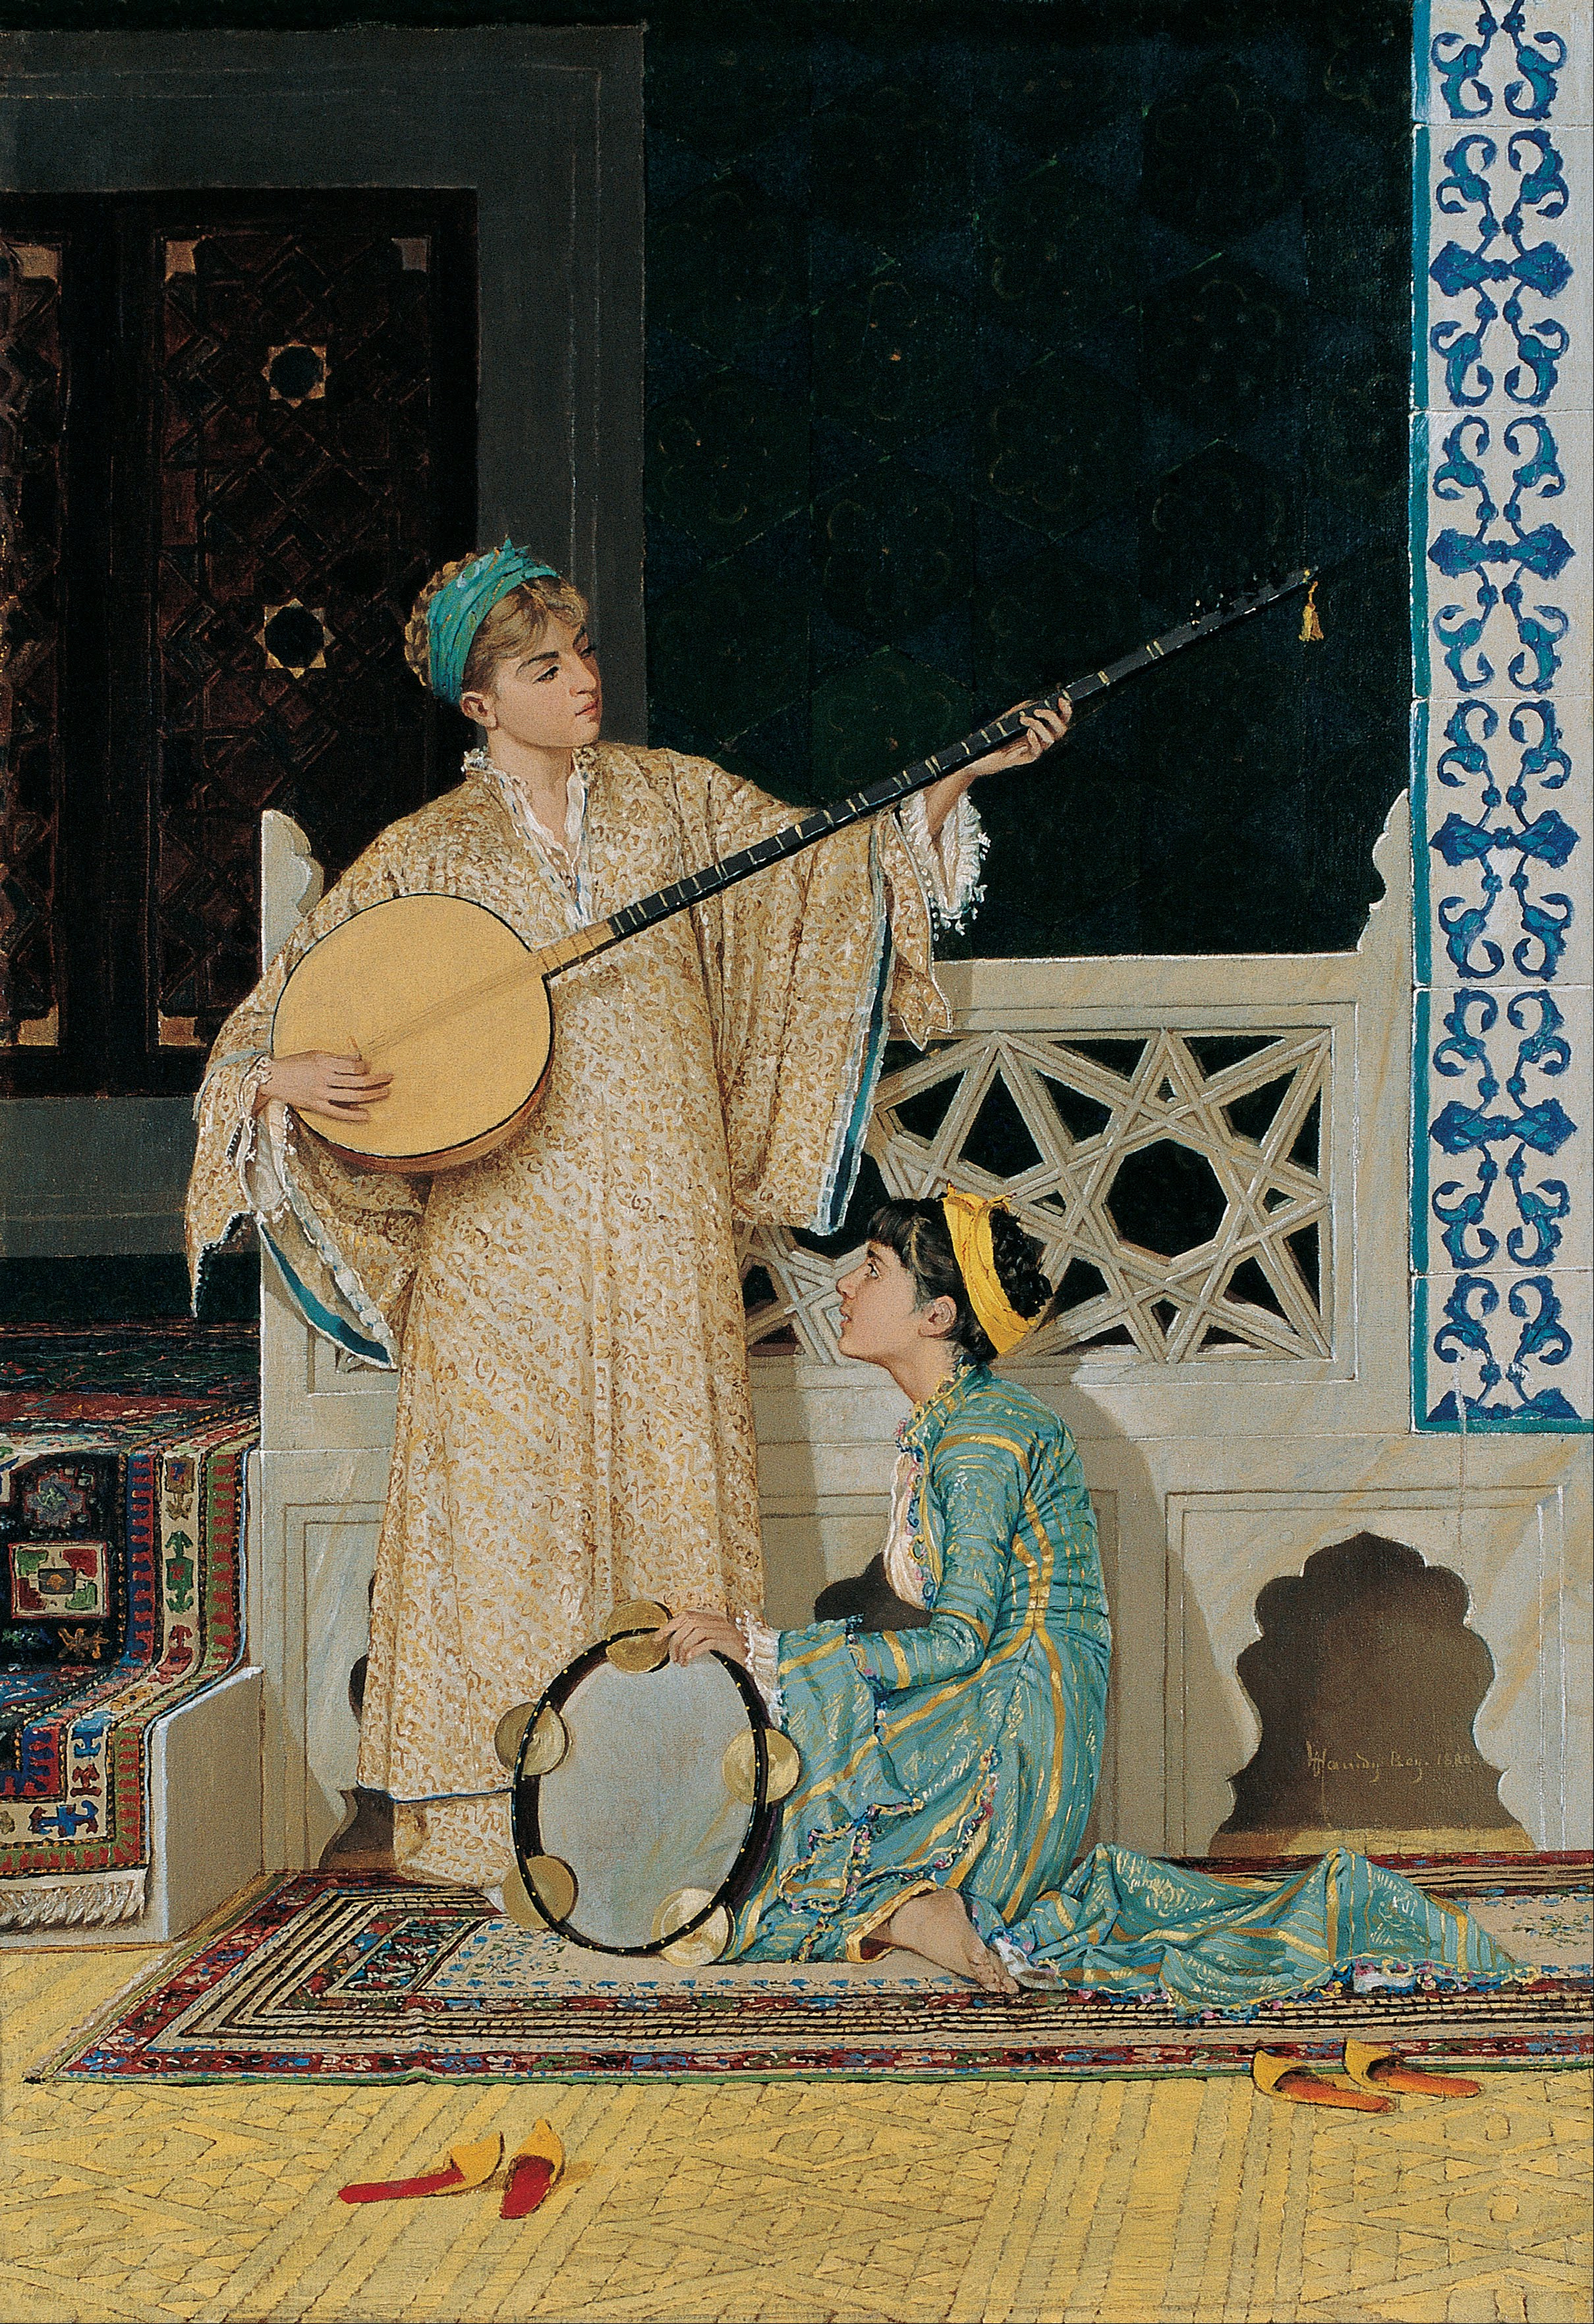 兩個音樂家女孩 by Osman Hamdi Bey - 19世紀下半葉 - 58 x 39 公分 